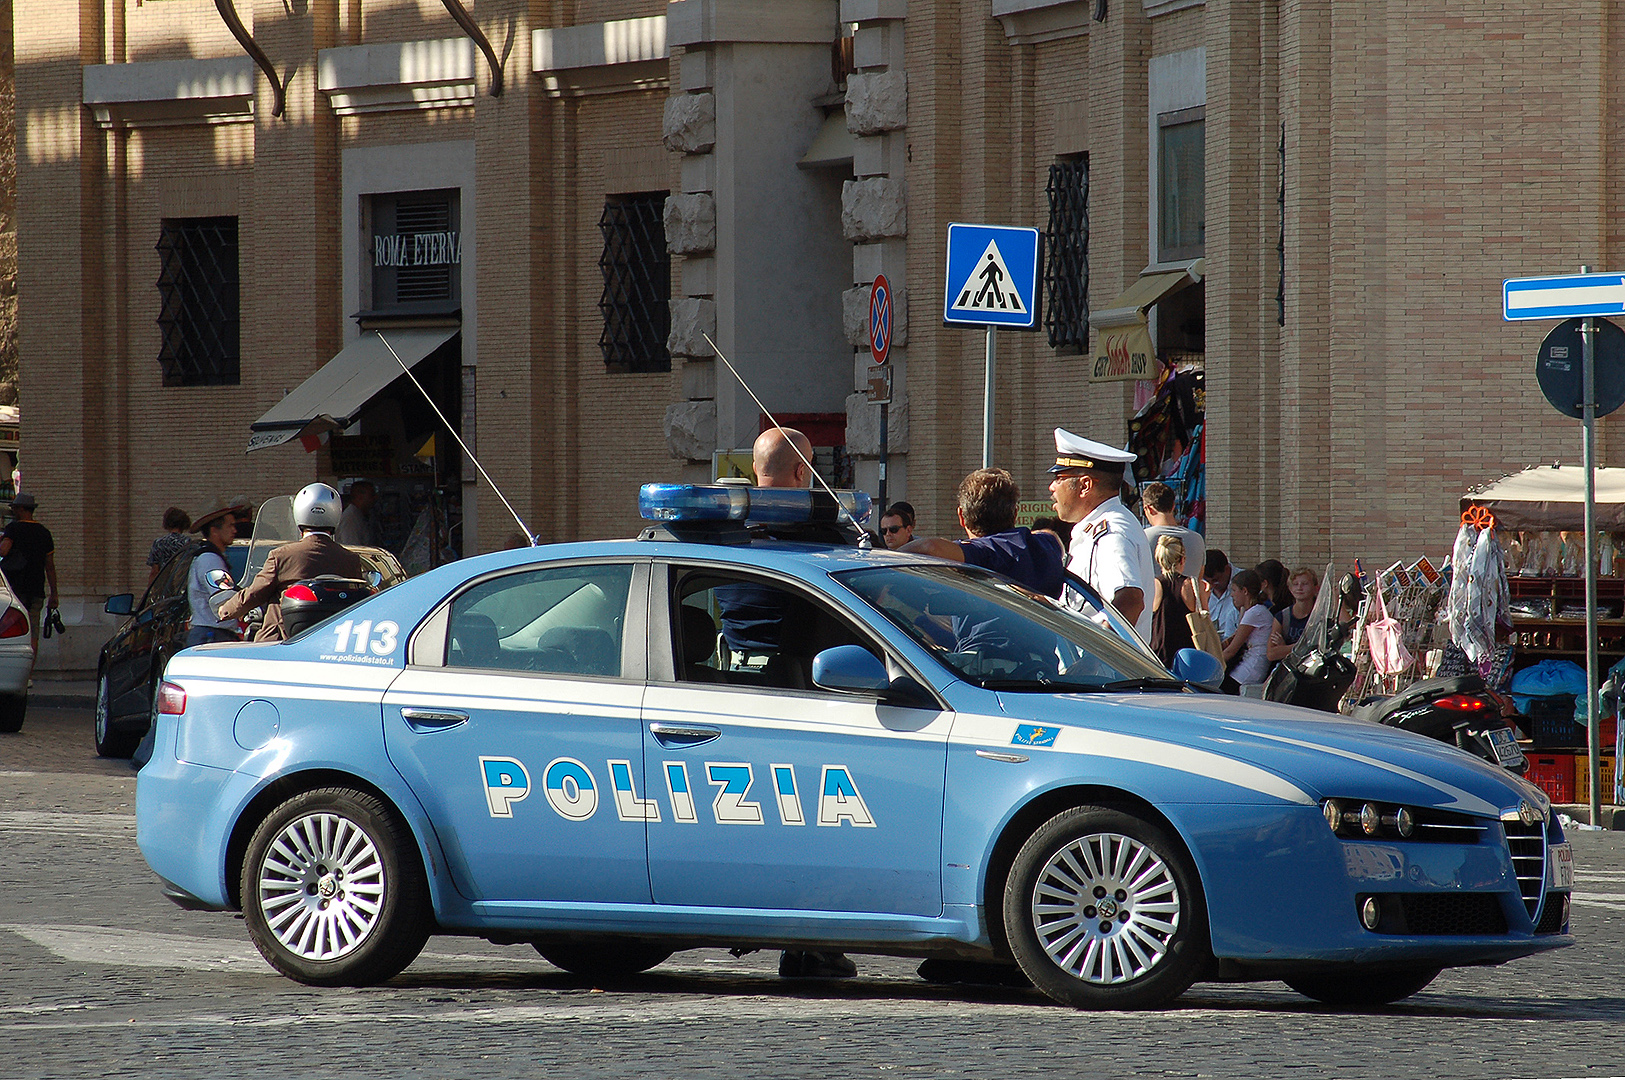 Alfa 159 Polizia (Sint-Pietersplein, Rome), Alfa 159 Polizia (Saint Peter